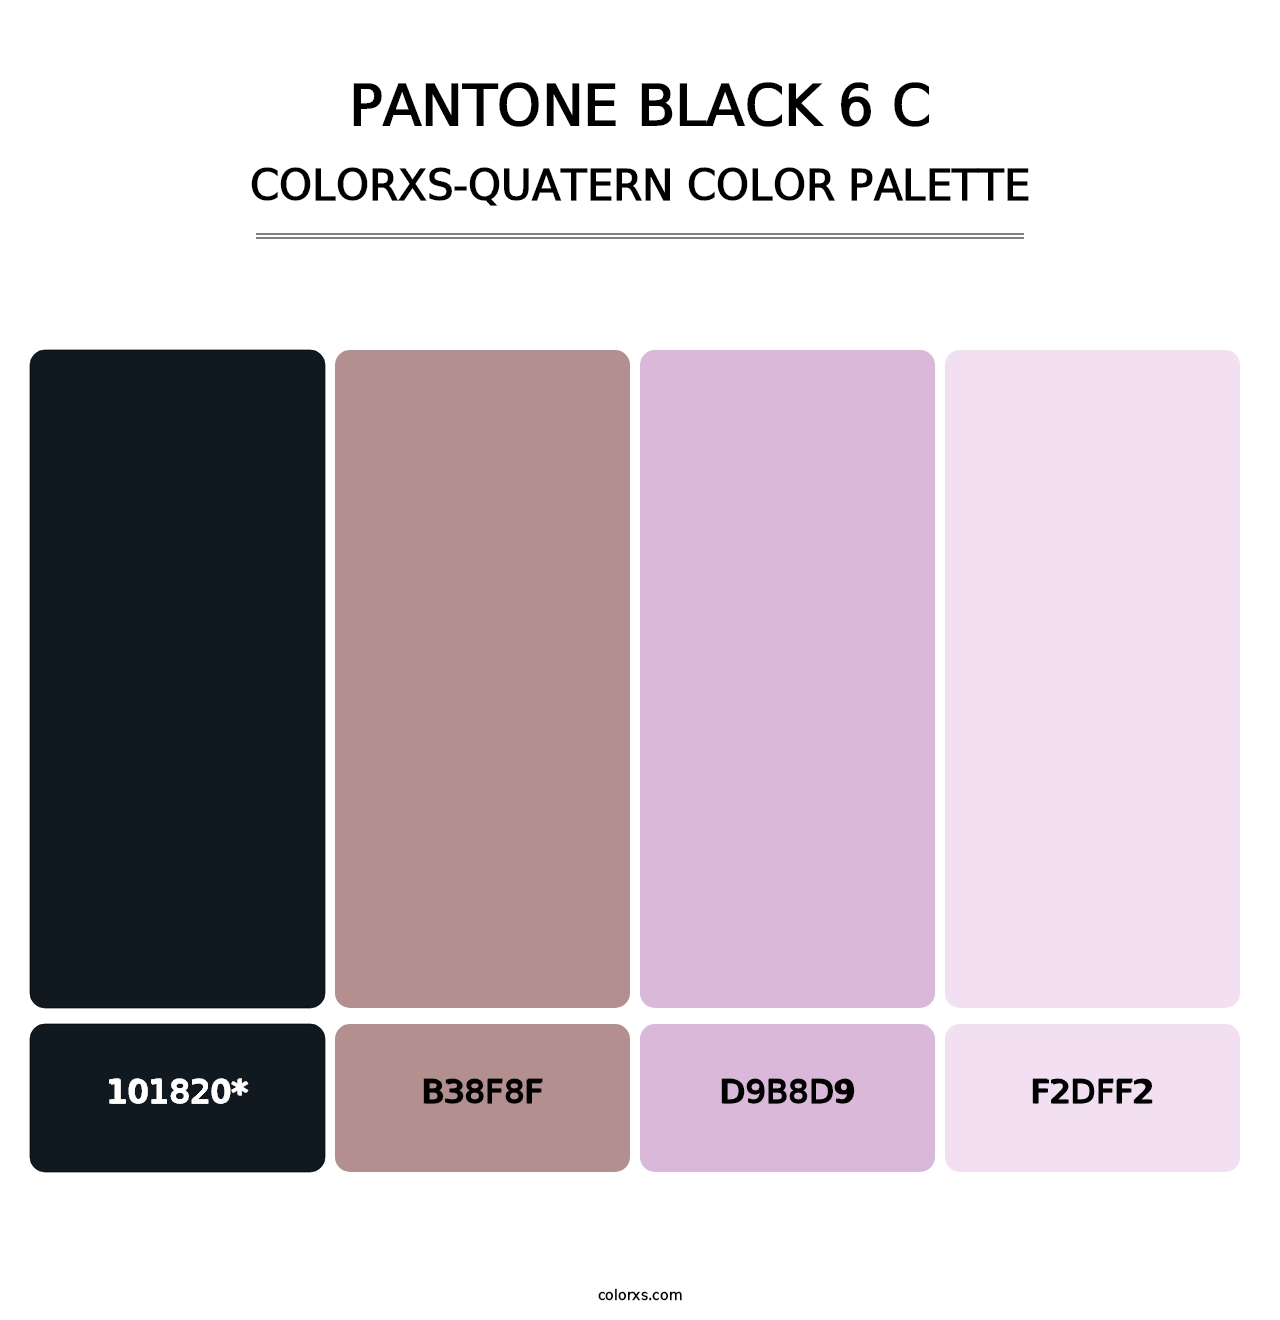 PANTONE Black 6 C - Colorxs Quatern Palette